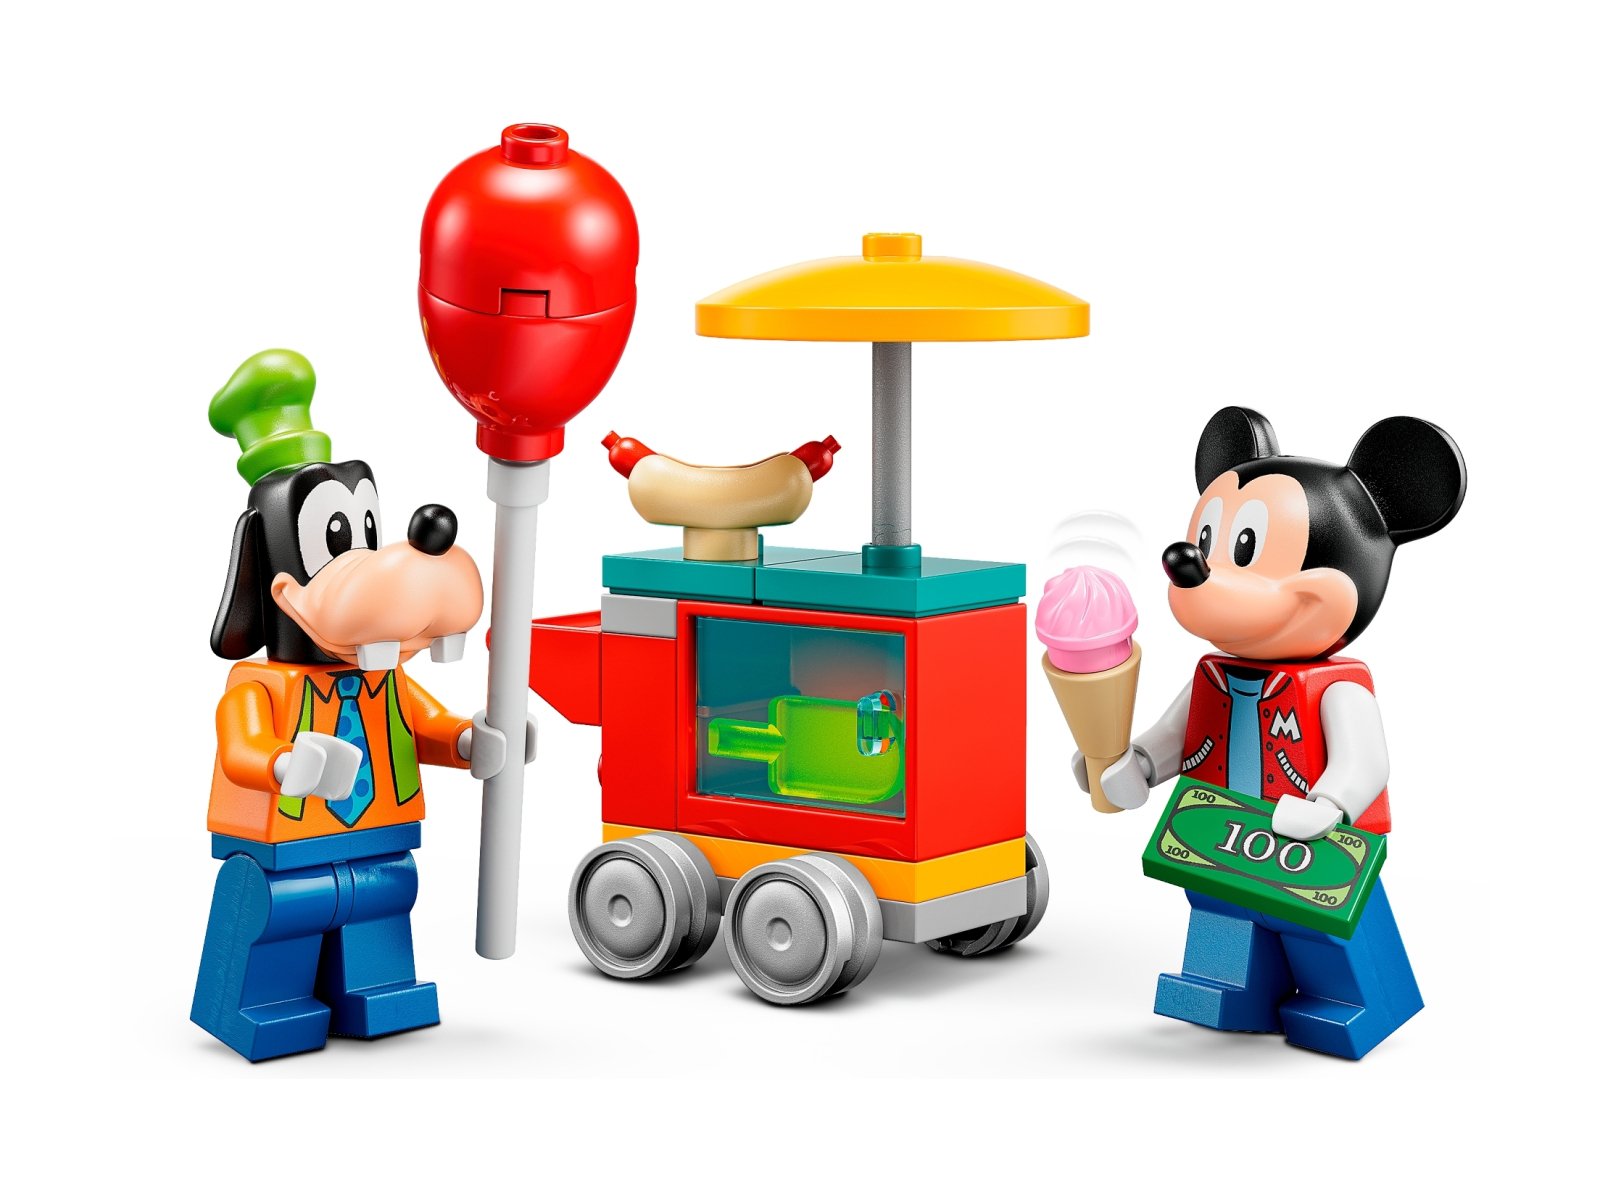 LEGO Disney 10778 Miki, Minnie i Goofy w wesołym miasteczku